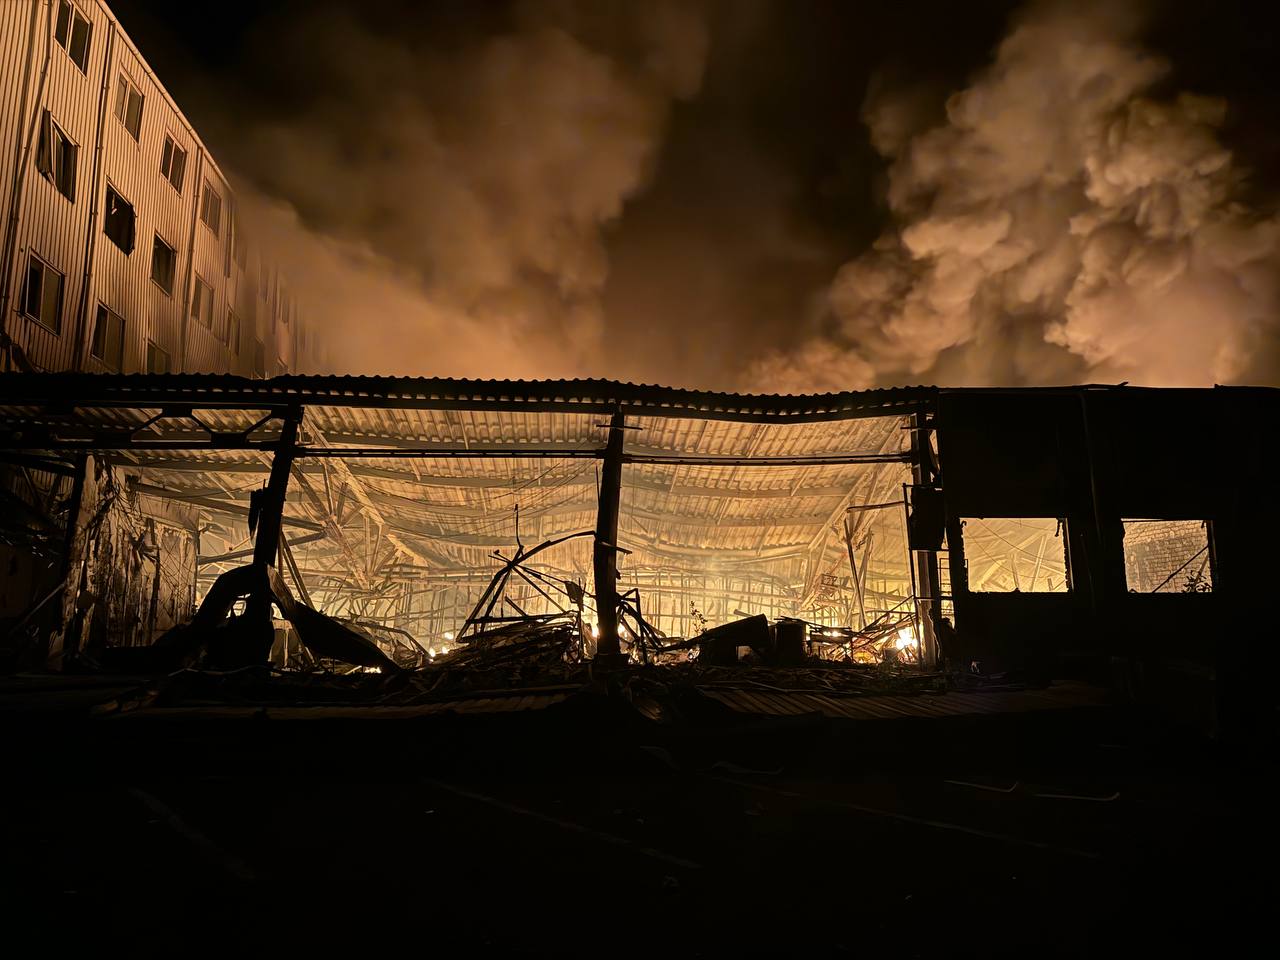 Руйнування в Одесі. Фото: ДСНС